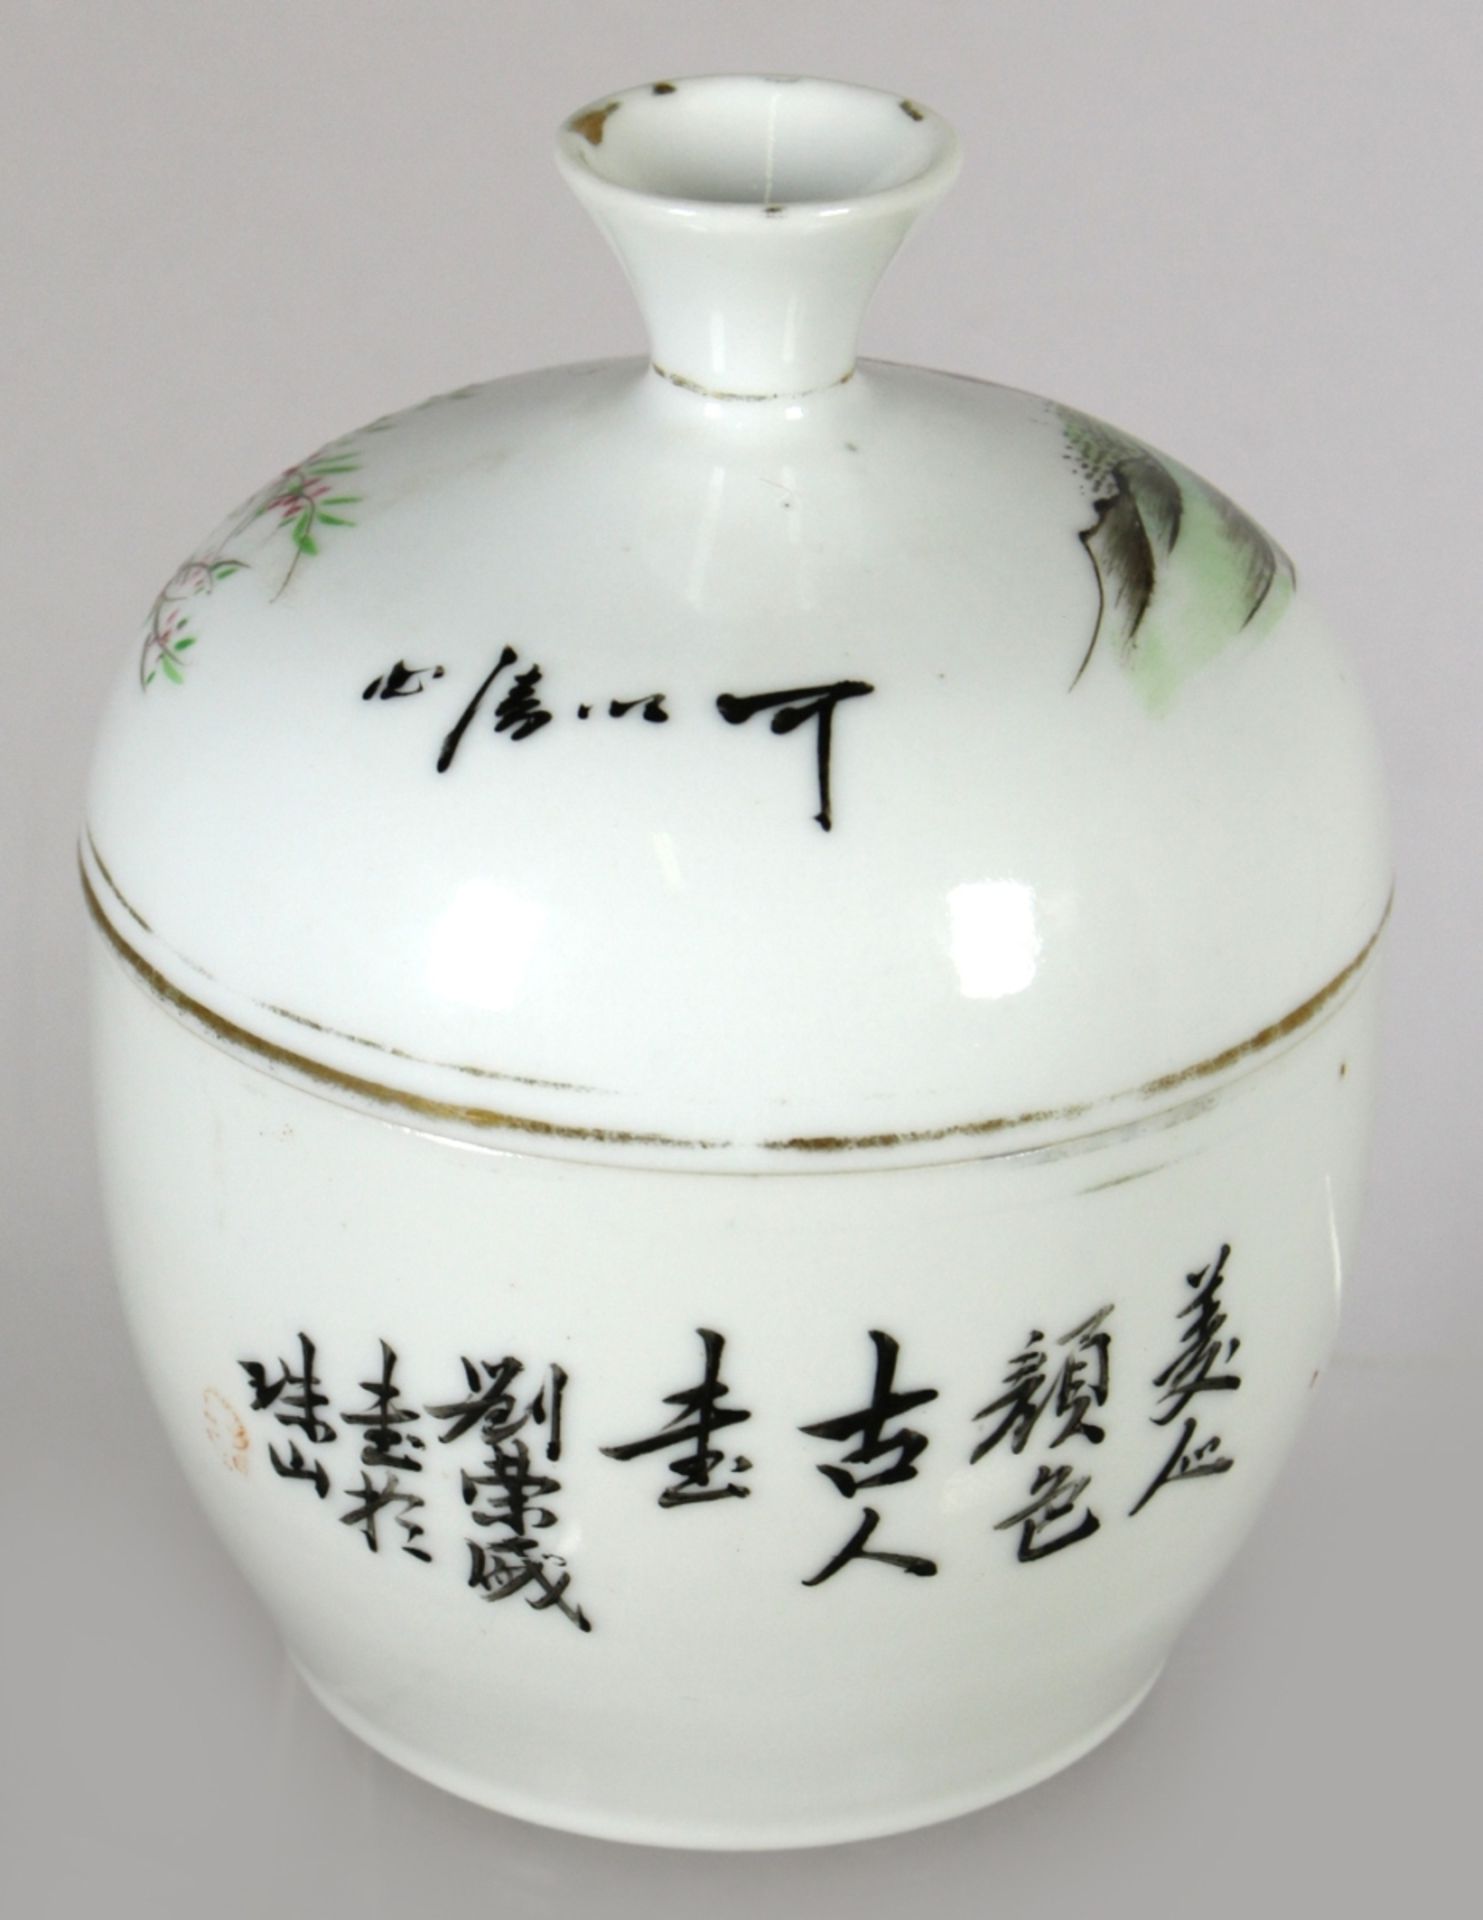 Porzellan-Deckeldose, China, um 1900, gebauchte Form mit gewölbtem Deckel undTrichterknauf, - Bild 2 aus 3